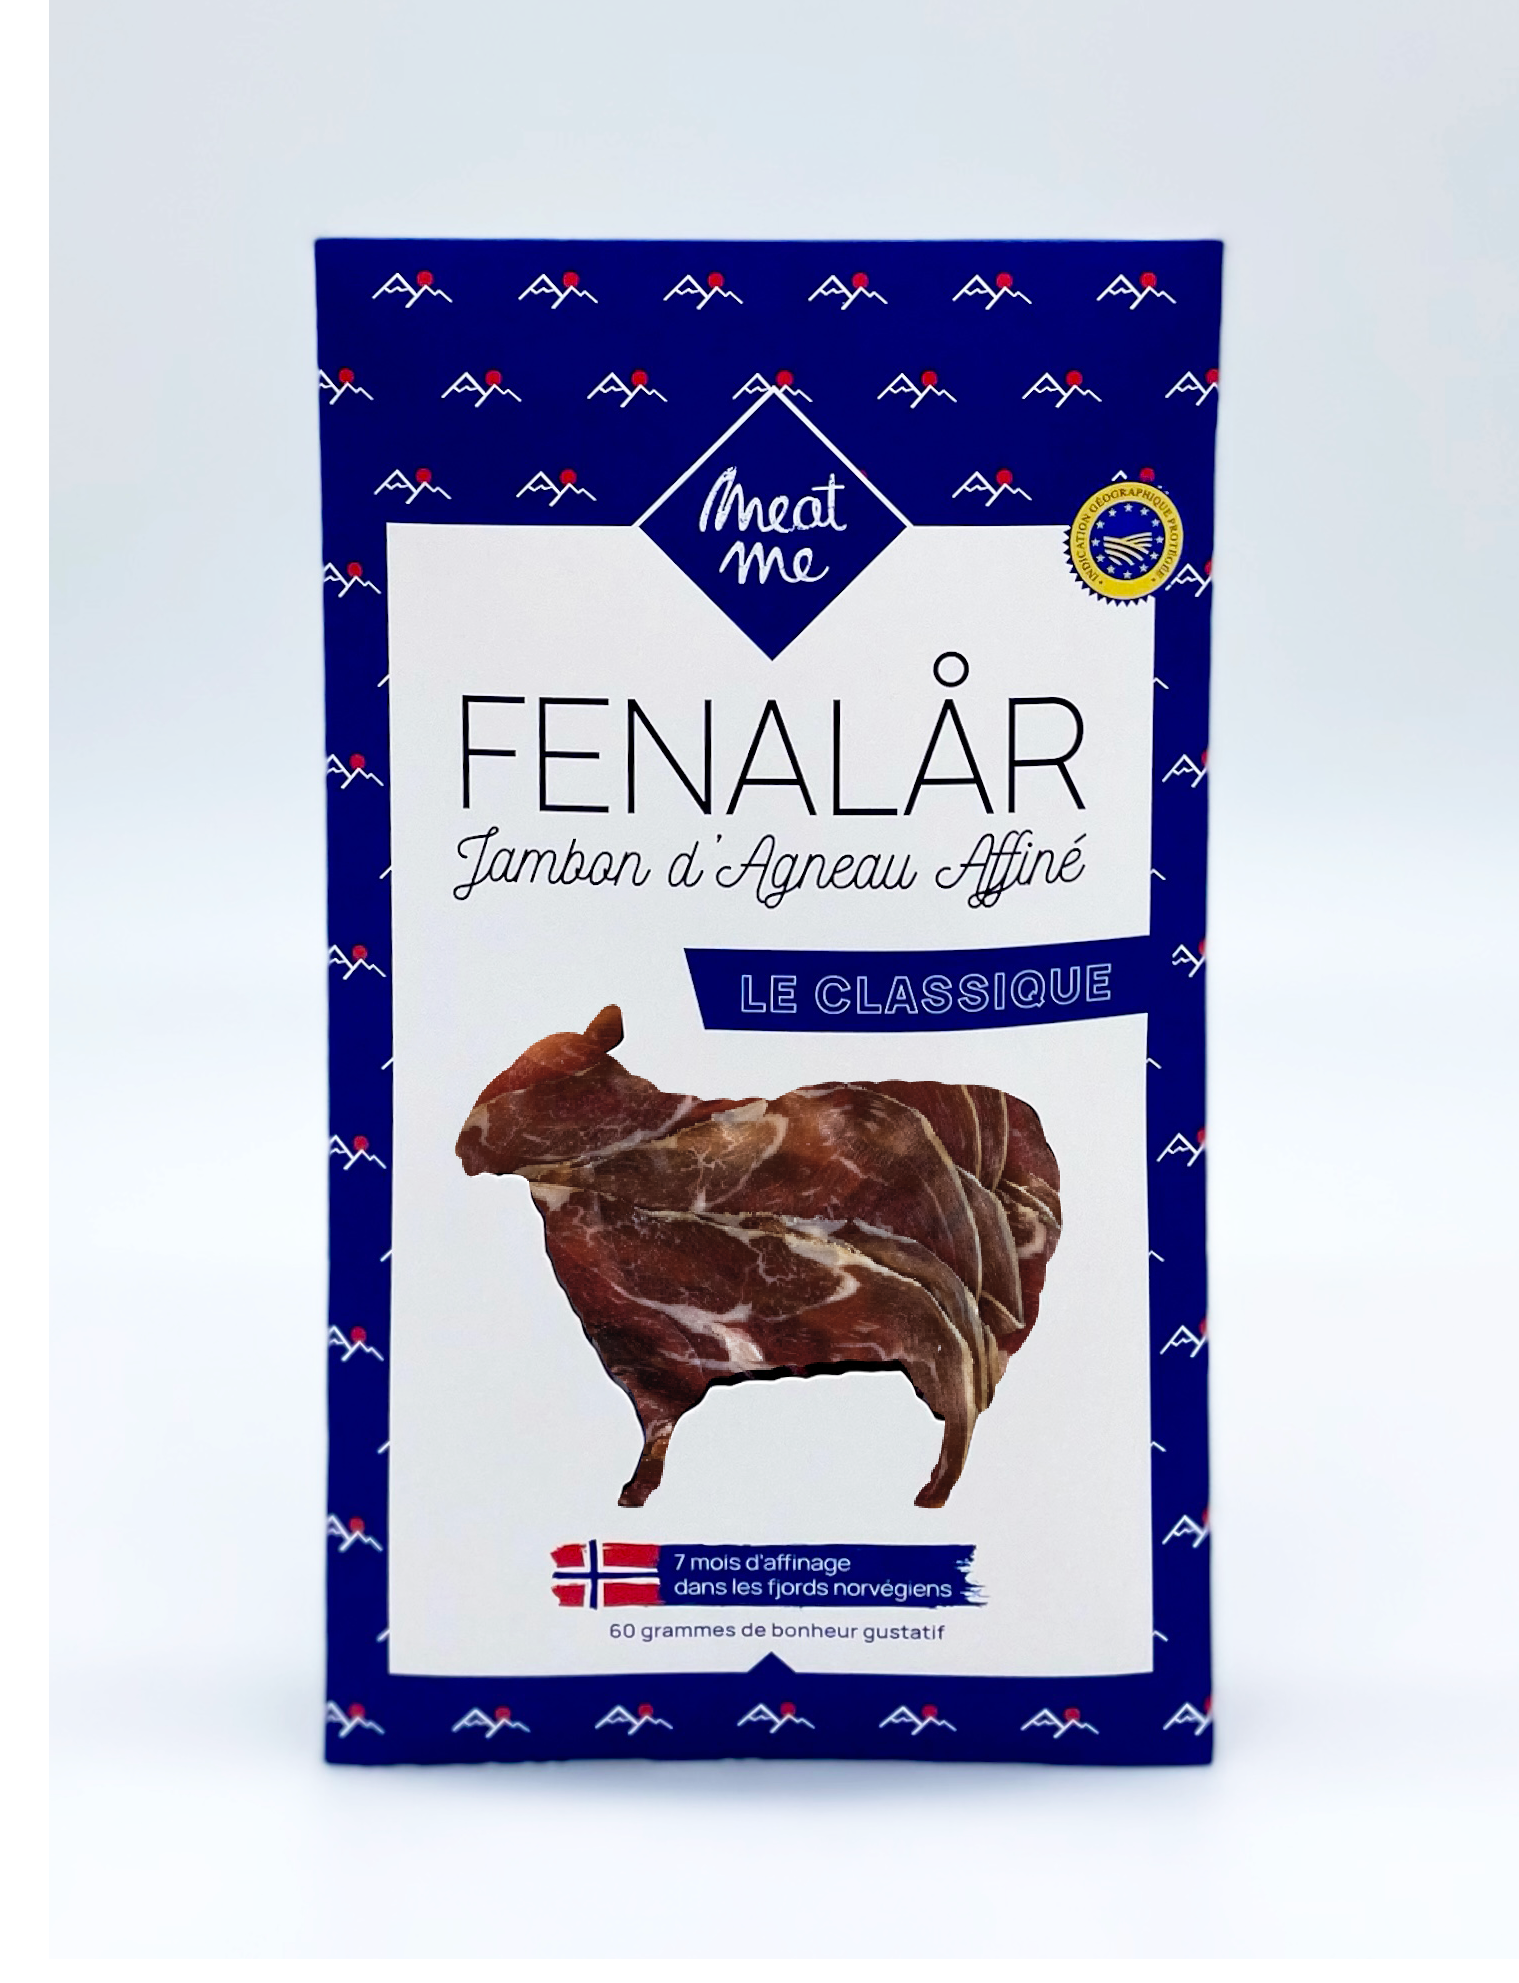 Viande de d'agneau séchée. Le Fenalar est un jambon d'agneau, recette culinaire originaire des Fjords norvégiens.